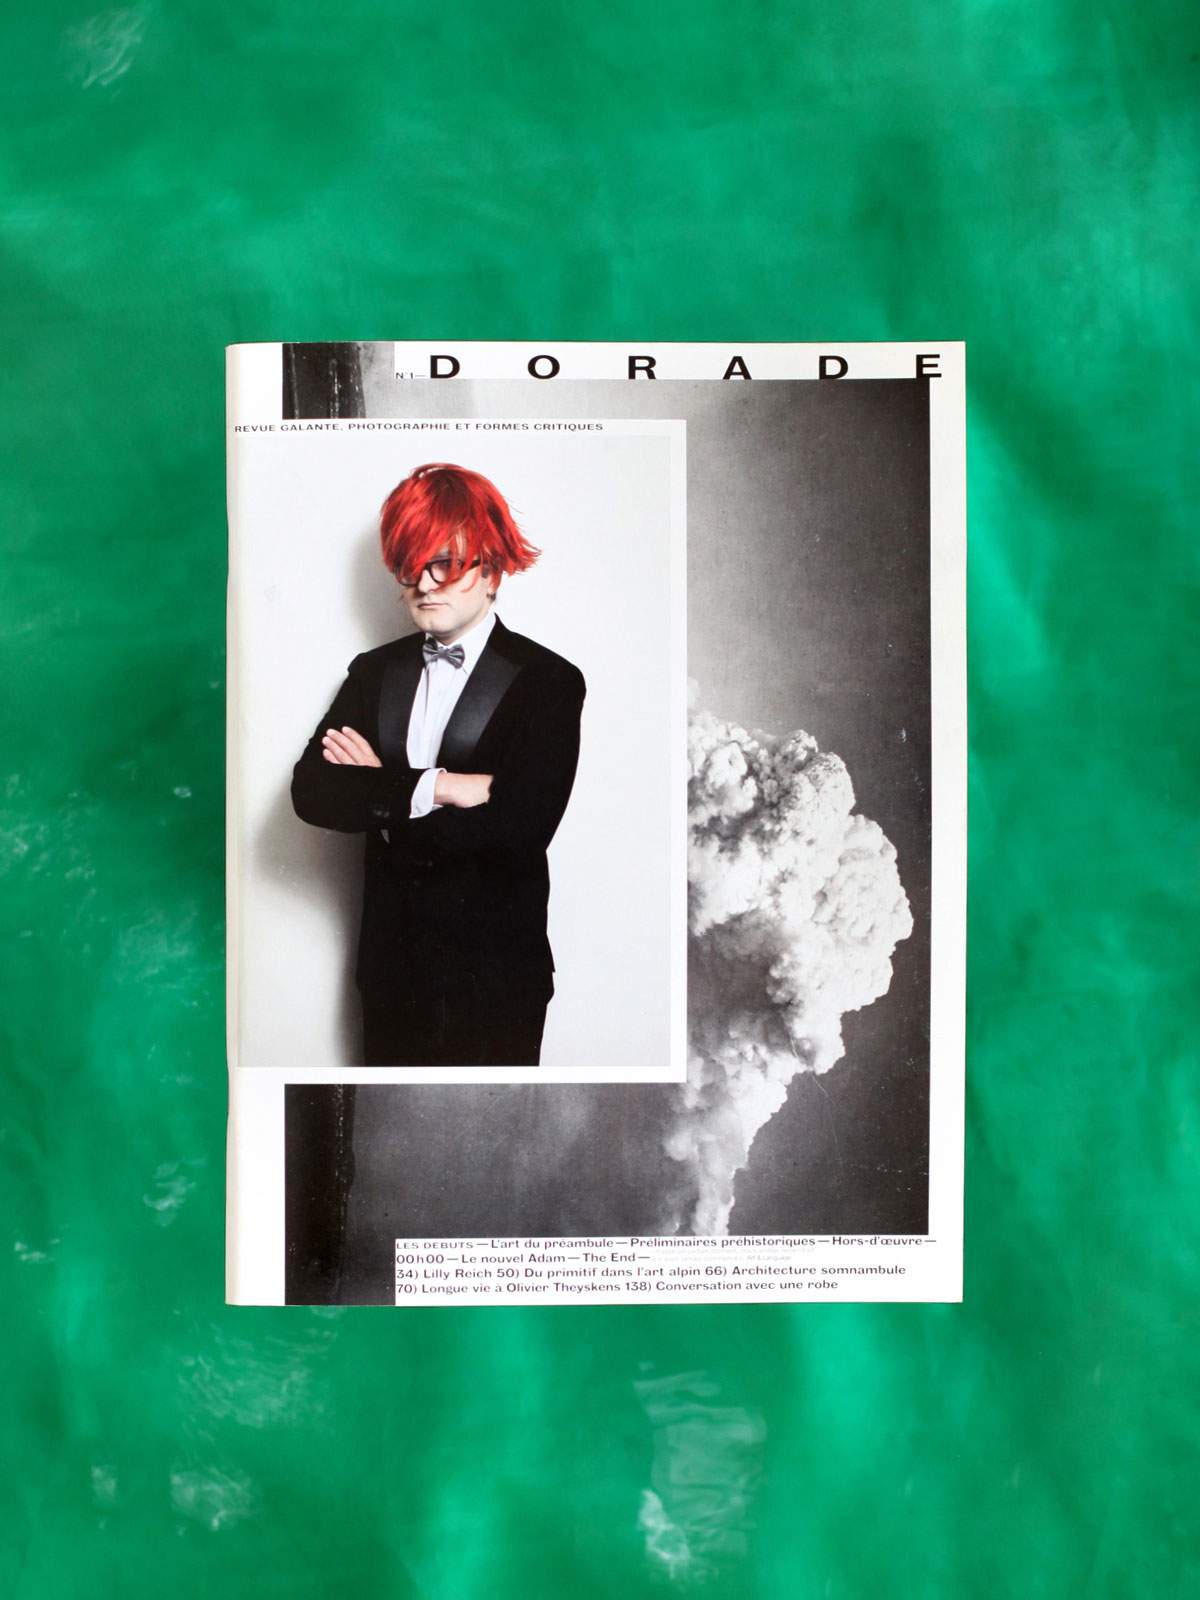 Das Magazin 'DORADE - Revue galante, photographie et formes critiques' (seit 2009)